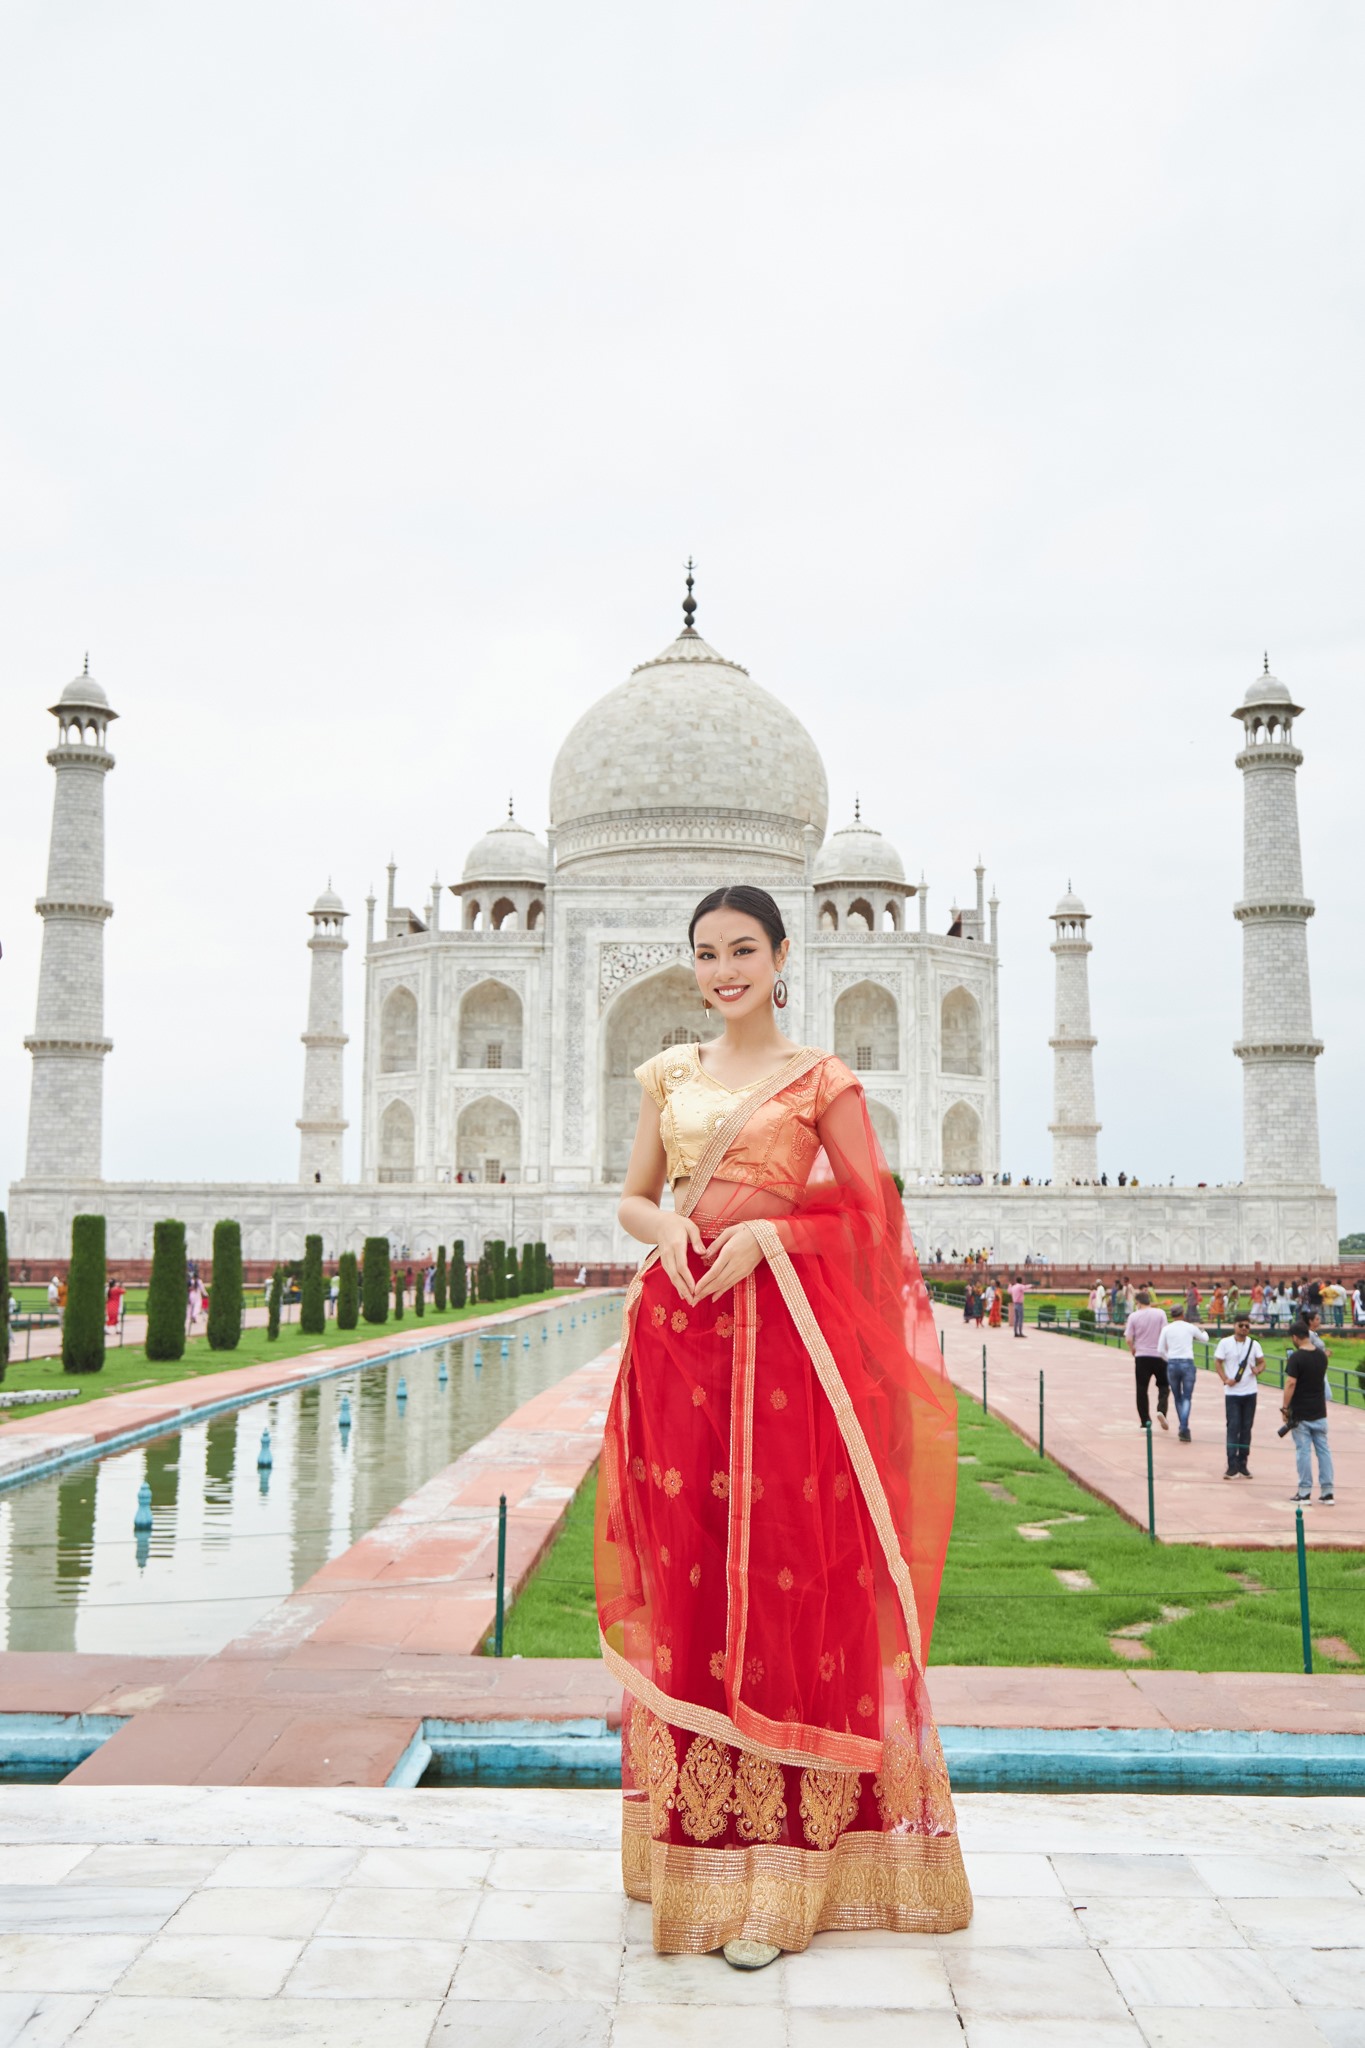 Trong chuyến công tác tại Ấn Độ vừa qua, Á hậu 2 Hoa hậu Hoàn vũ Việt Nam - Huỳnh Phạm Thủy Tiên đã có cơ hội diện trang phục truyền thống mang tên Langa Voni của người phụ nữ Ấn Độ.